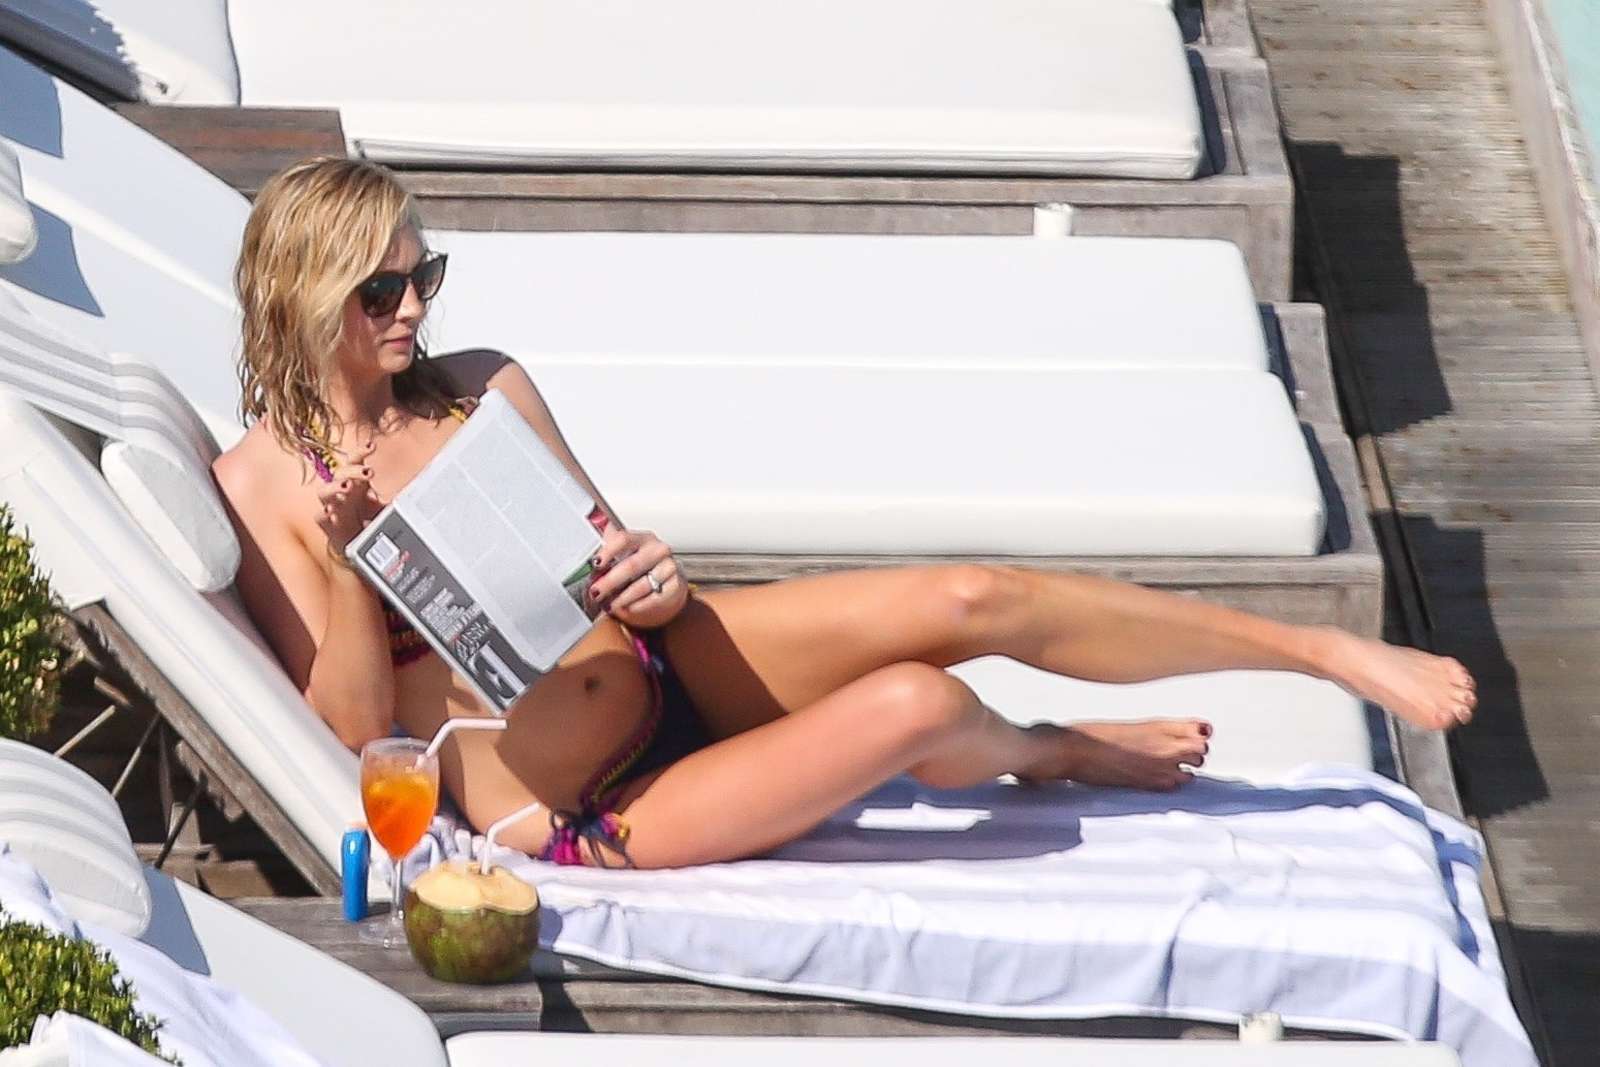 Candice Accola in Bikini at a pool in Rio. 